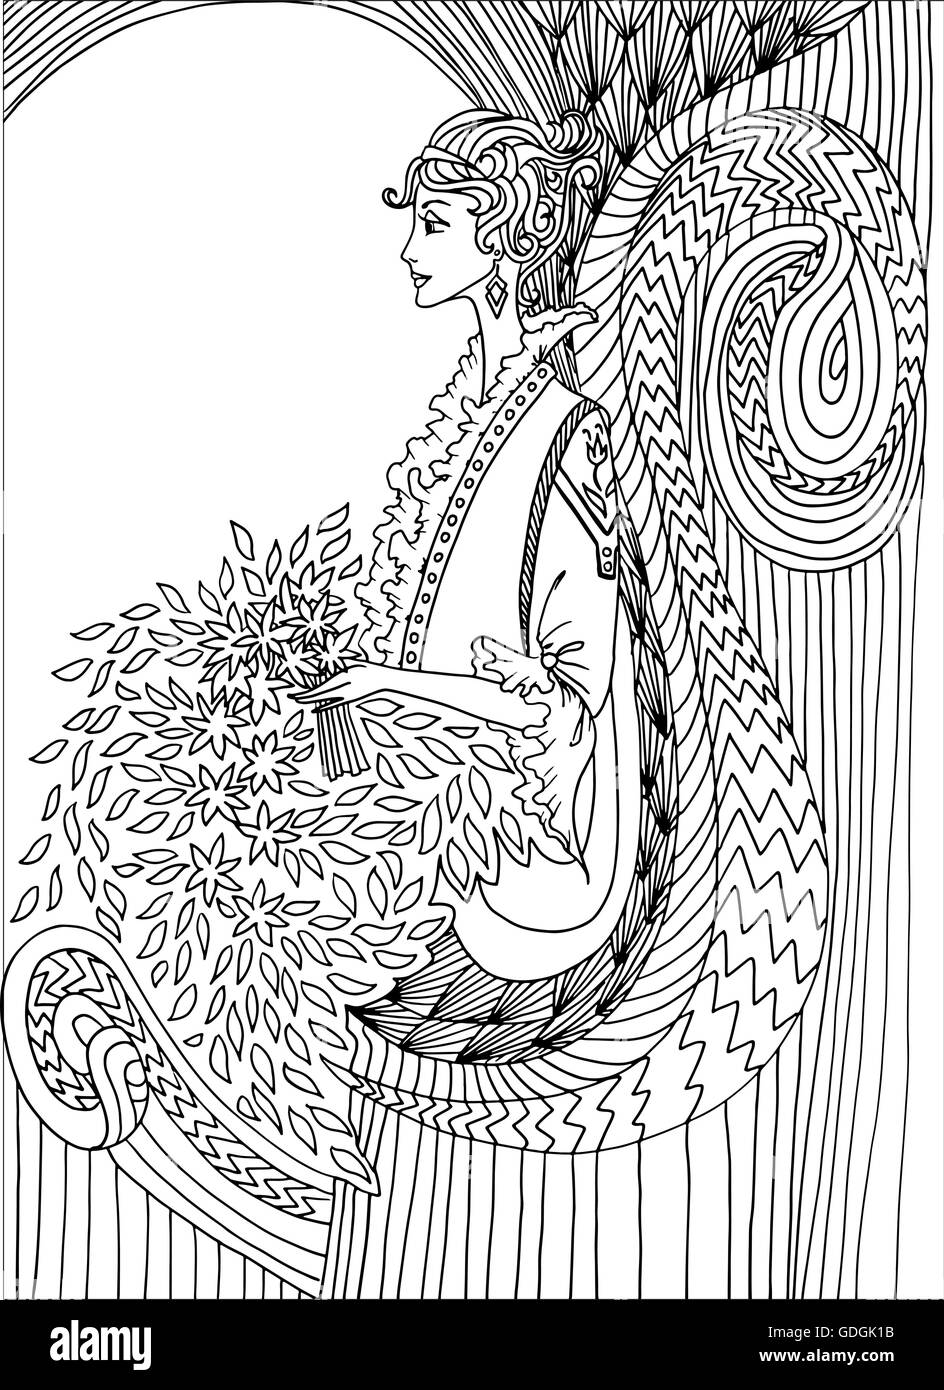 Dibujo de Mujer de estilo art nouveau vintage para colorear